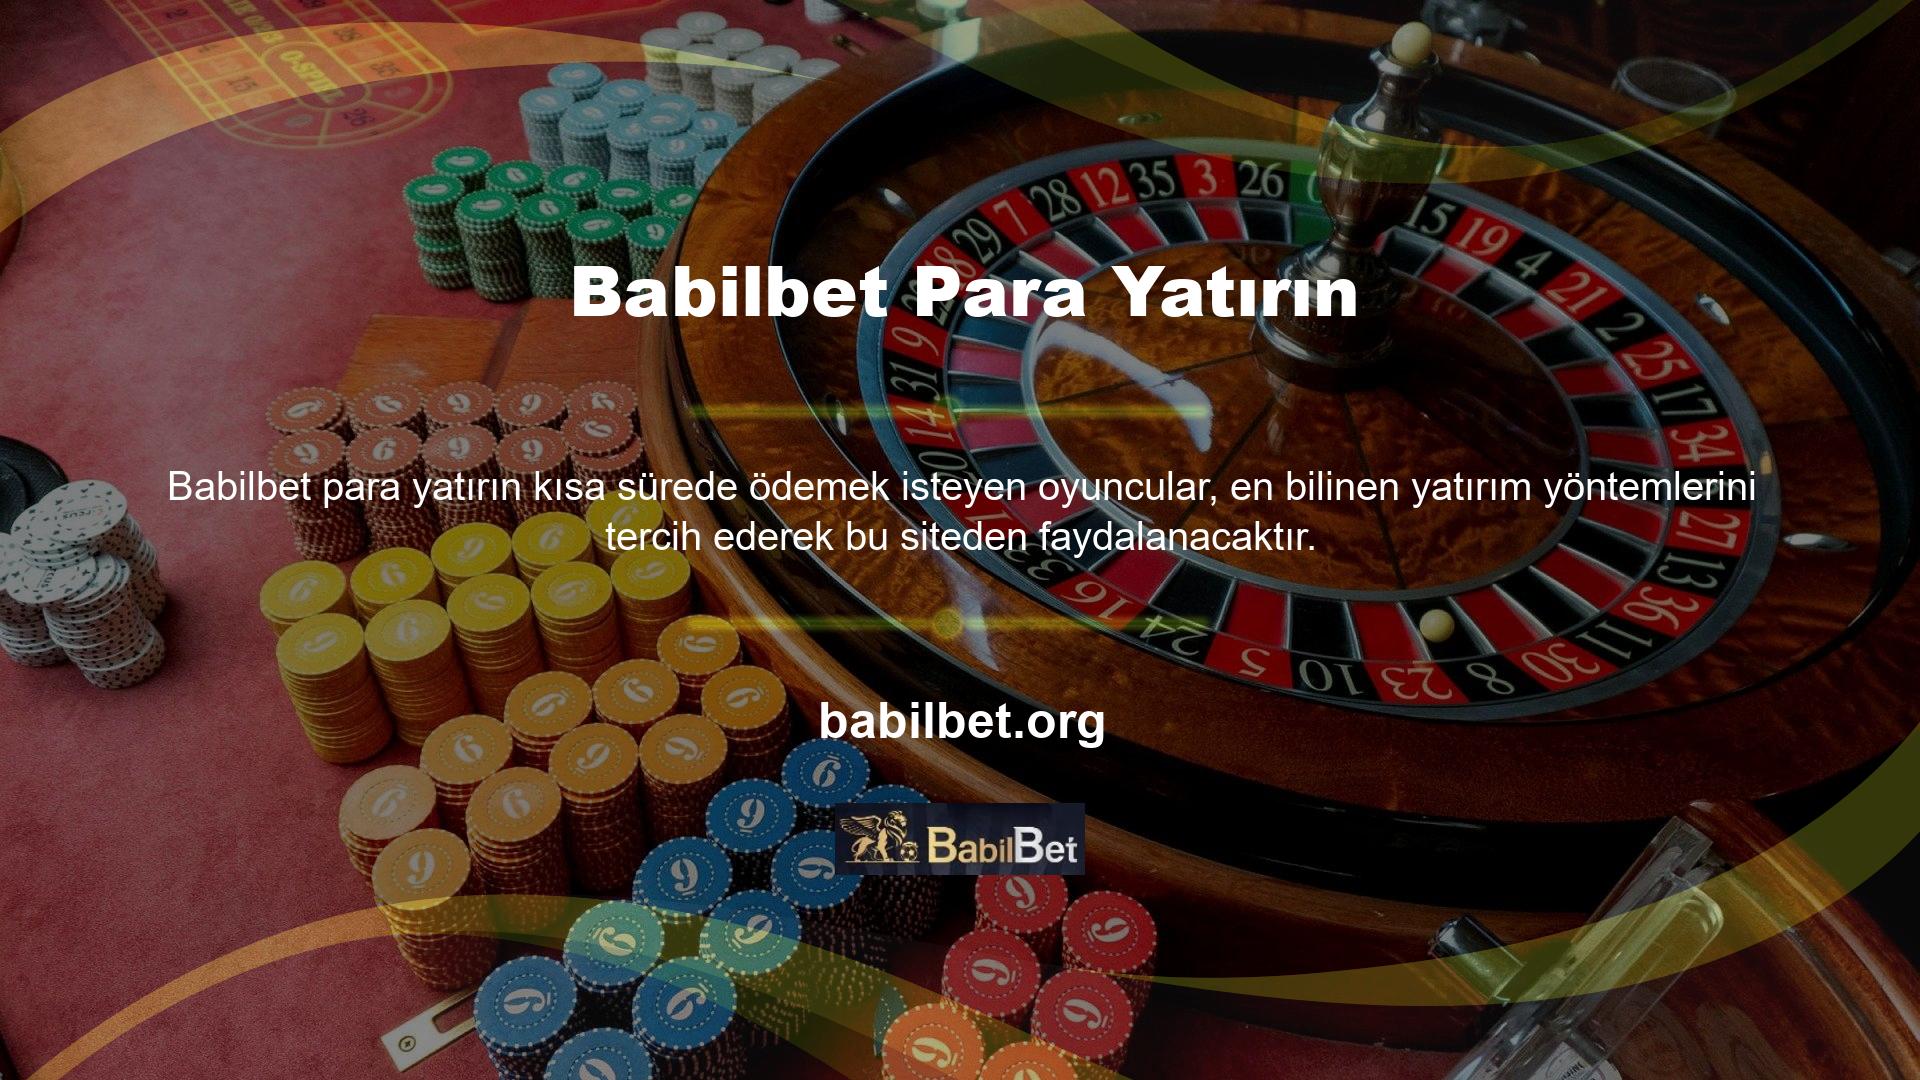 Babilbet para yatırma yöntemleri Türk Lirası para birimine özel teknoloji içermediğinden diğer seçenekler de akıllıca kullanılabilir